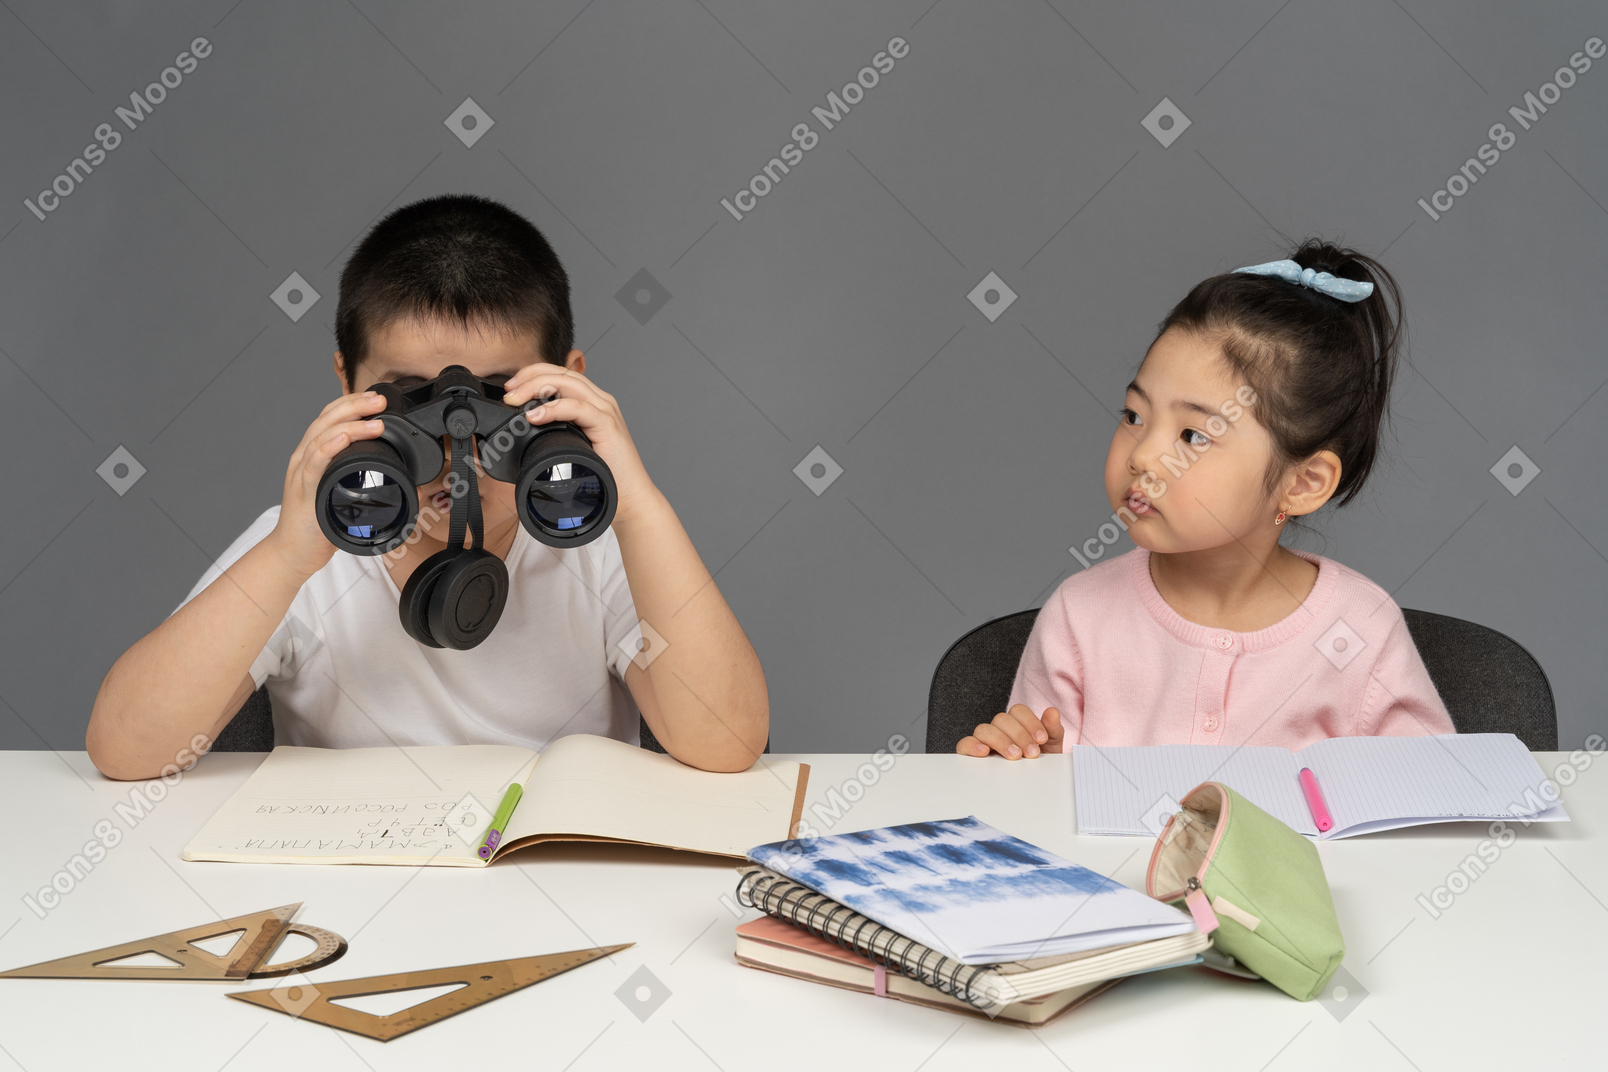 Мальчик смотрит в бинокль рядом с девушкой